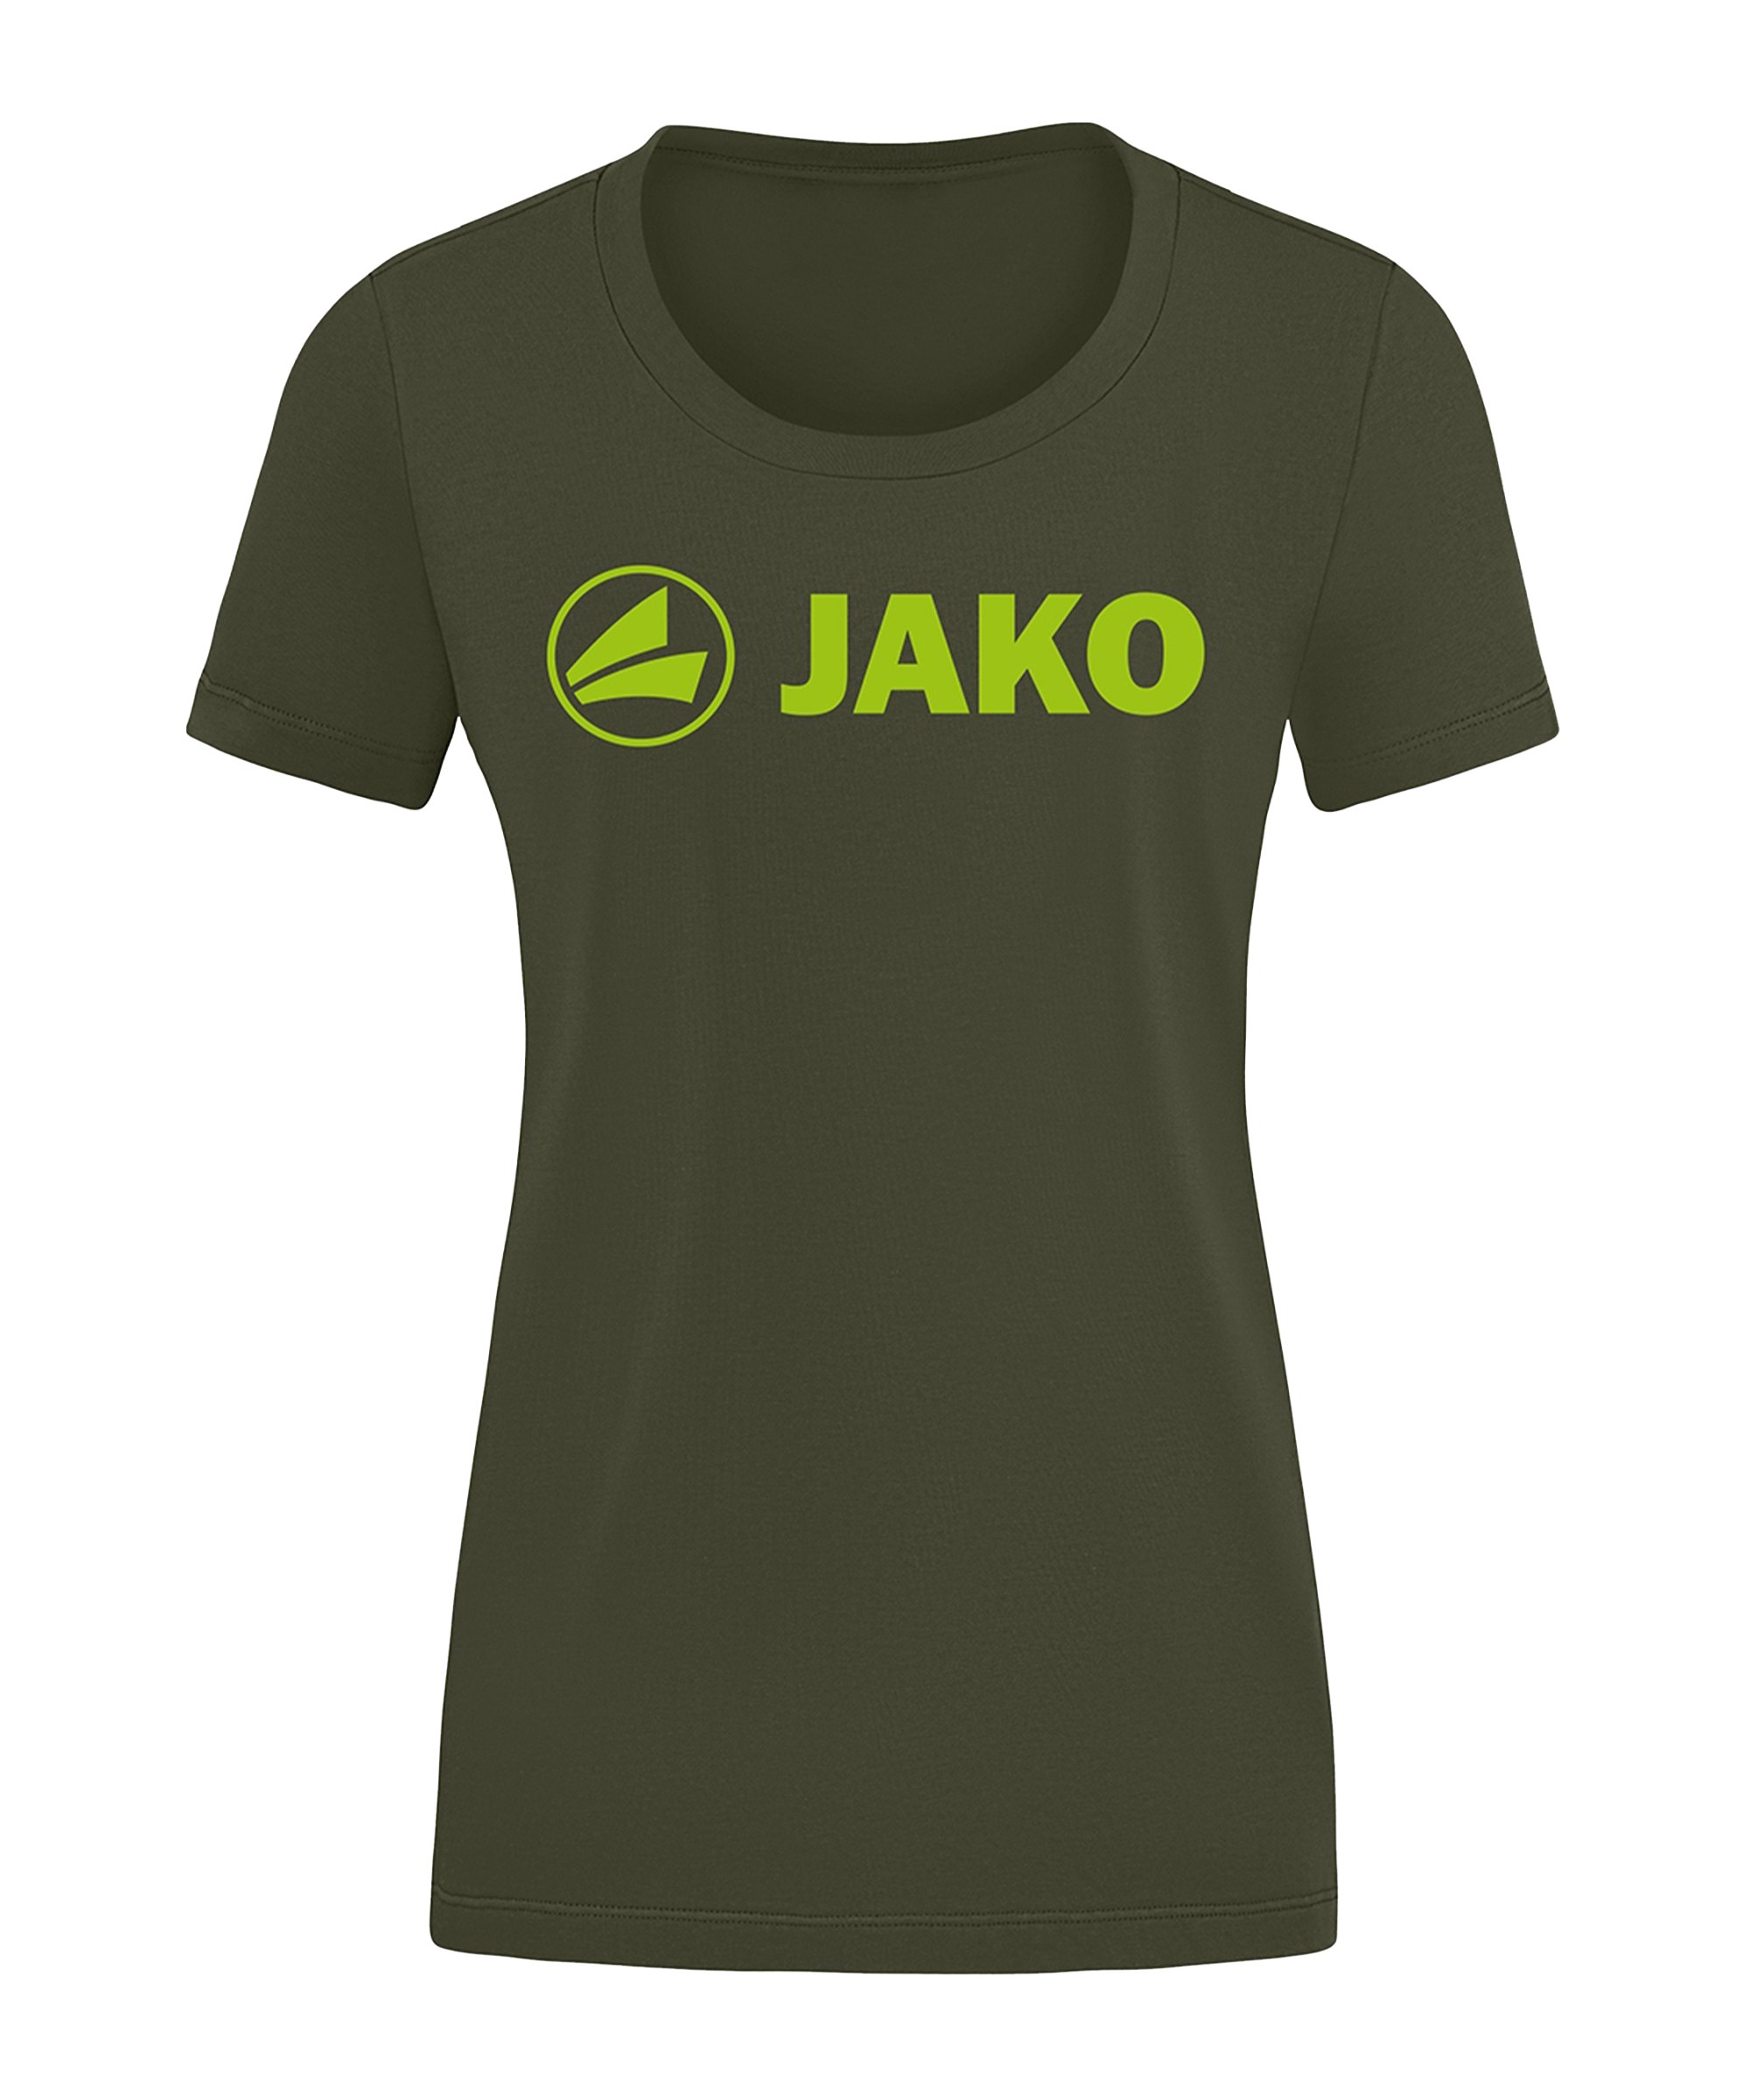 JAKO Promo T-Shirt Damen Khaki Grün F231 - khaki